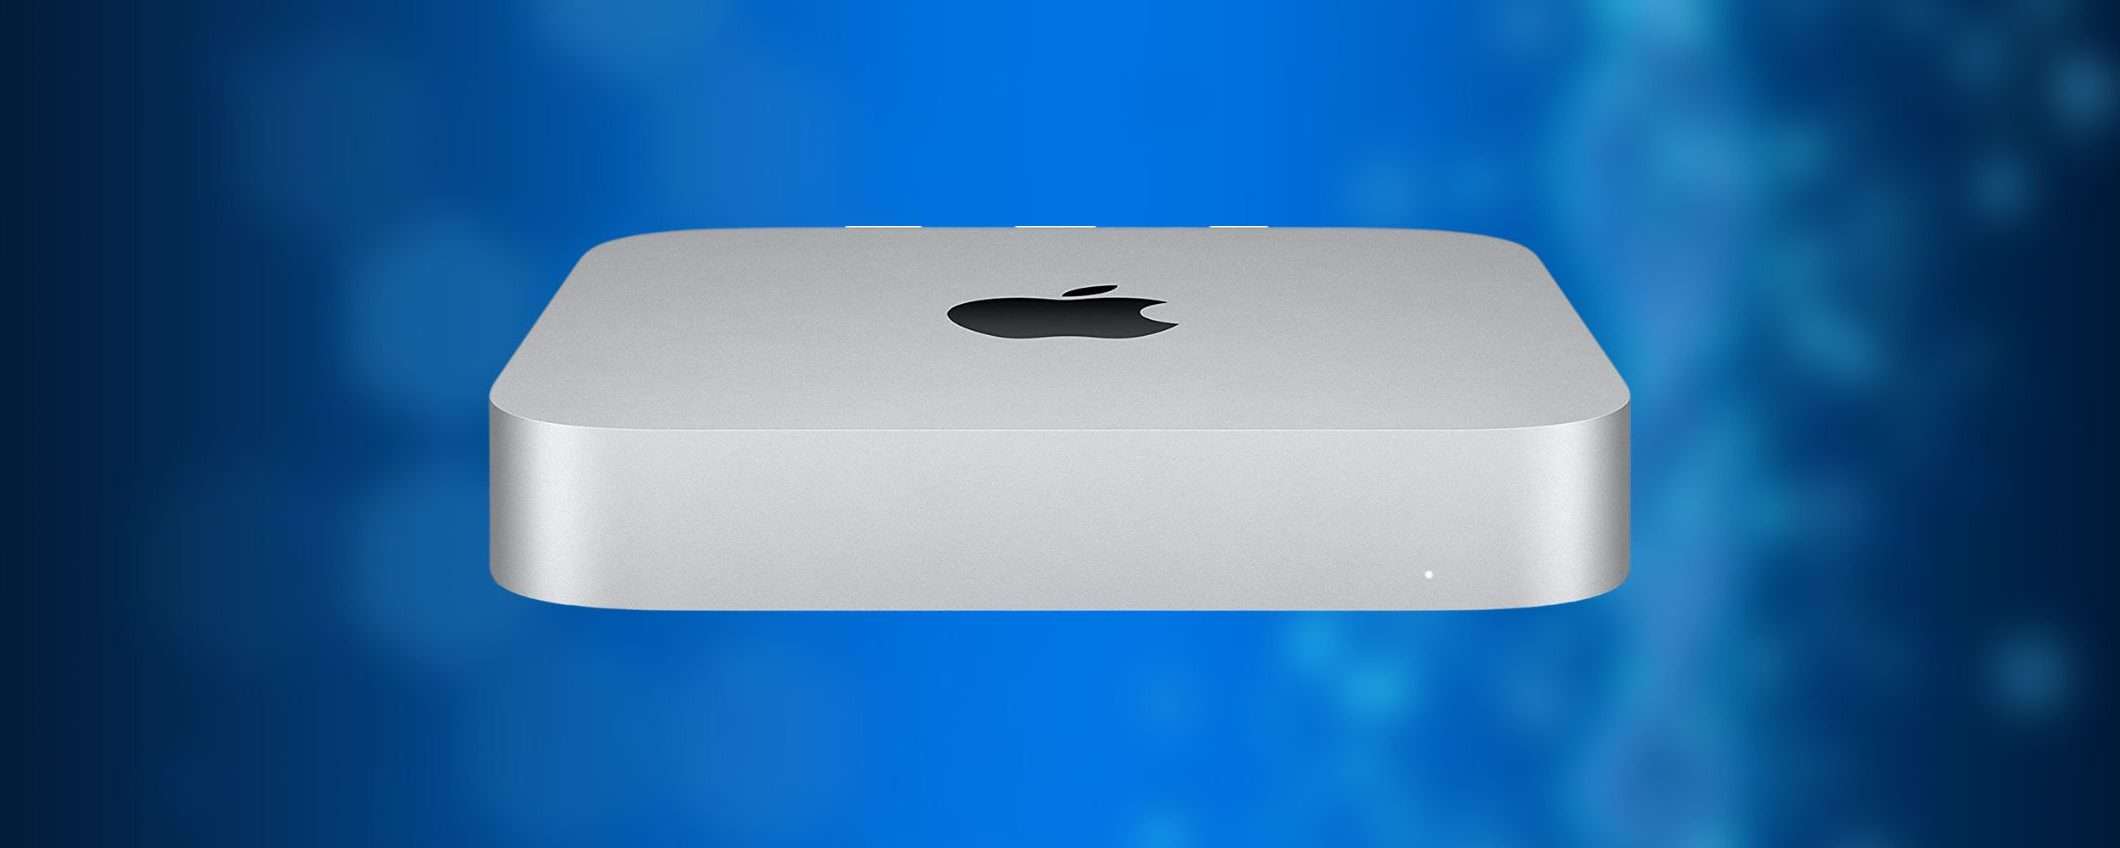 Mac Mini: ritorna il SUPER SCONTO di Amazon, lo paghi meno di 600€